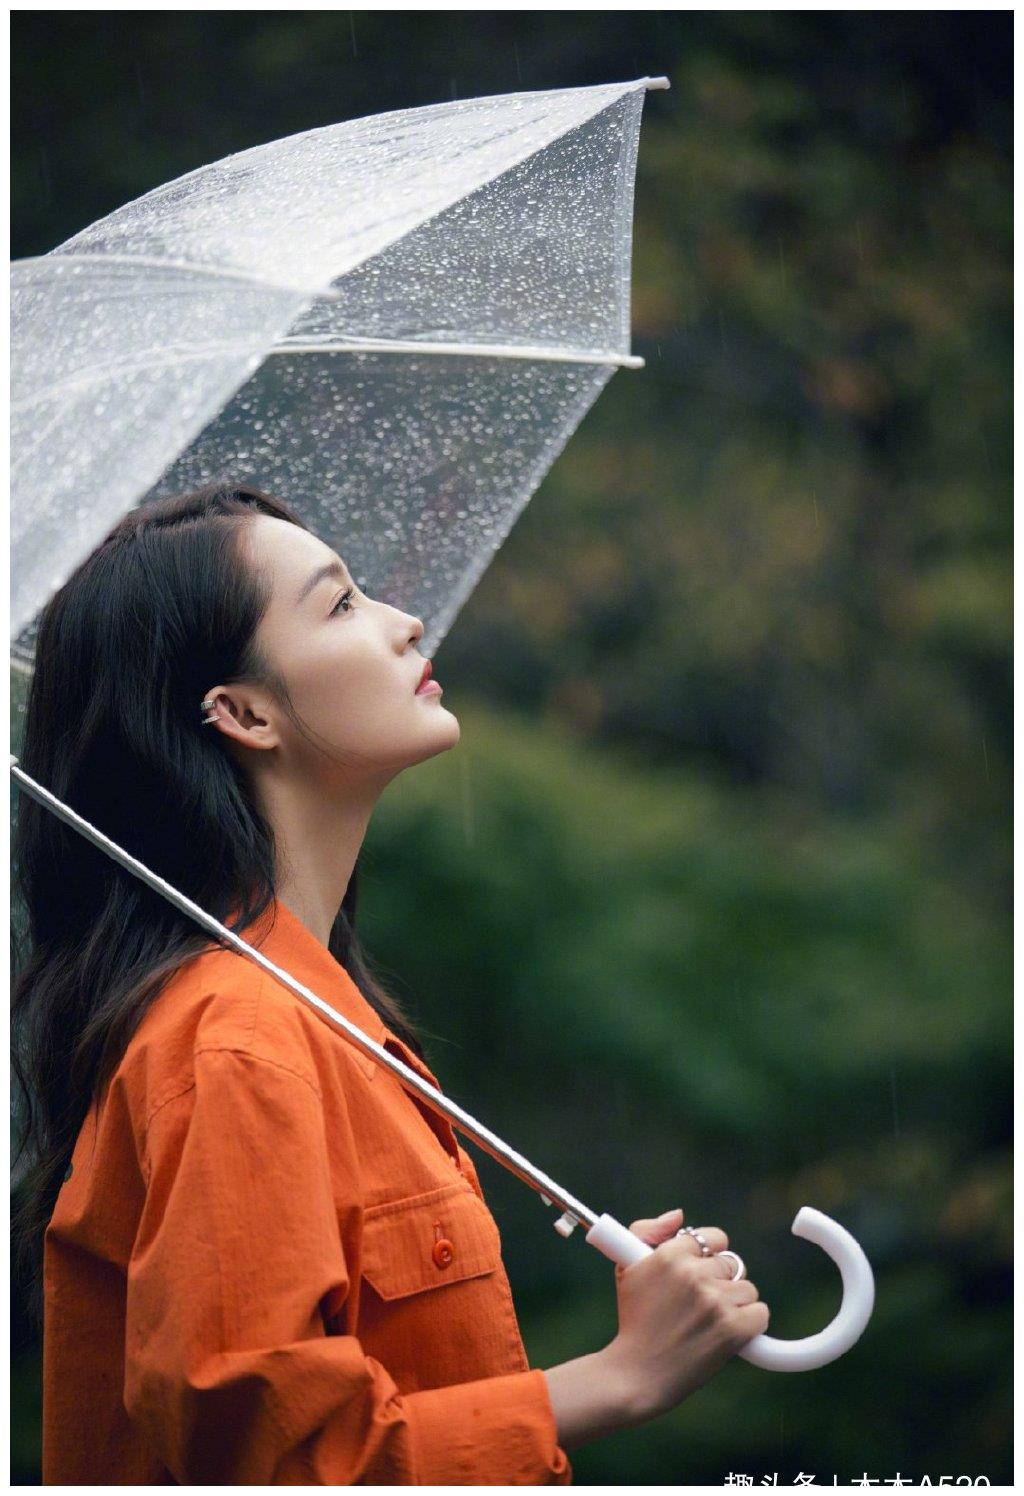 李沁雨天撑伞漫步超唯美,弯头卖萌笑颜如花